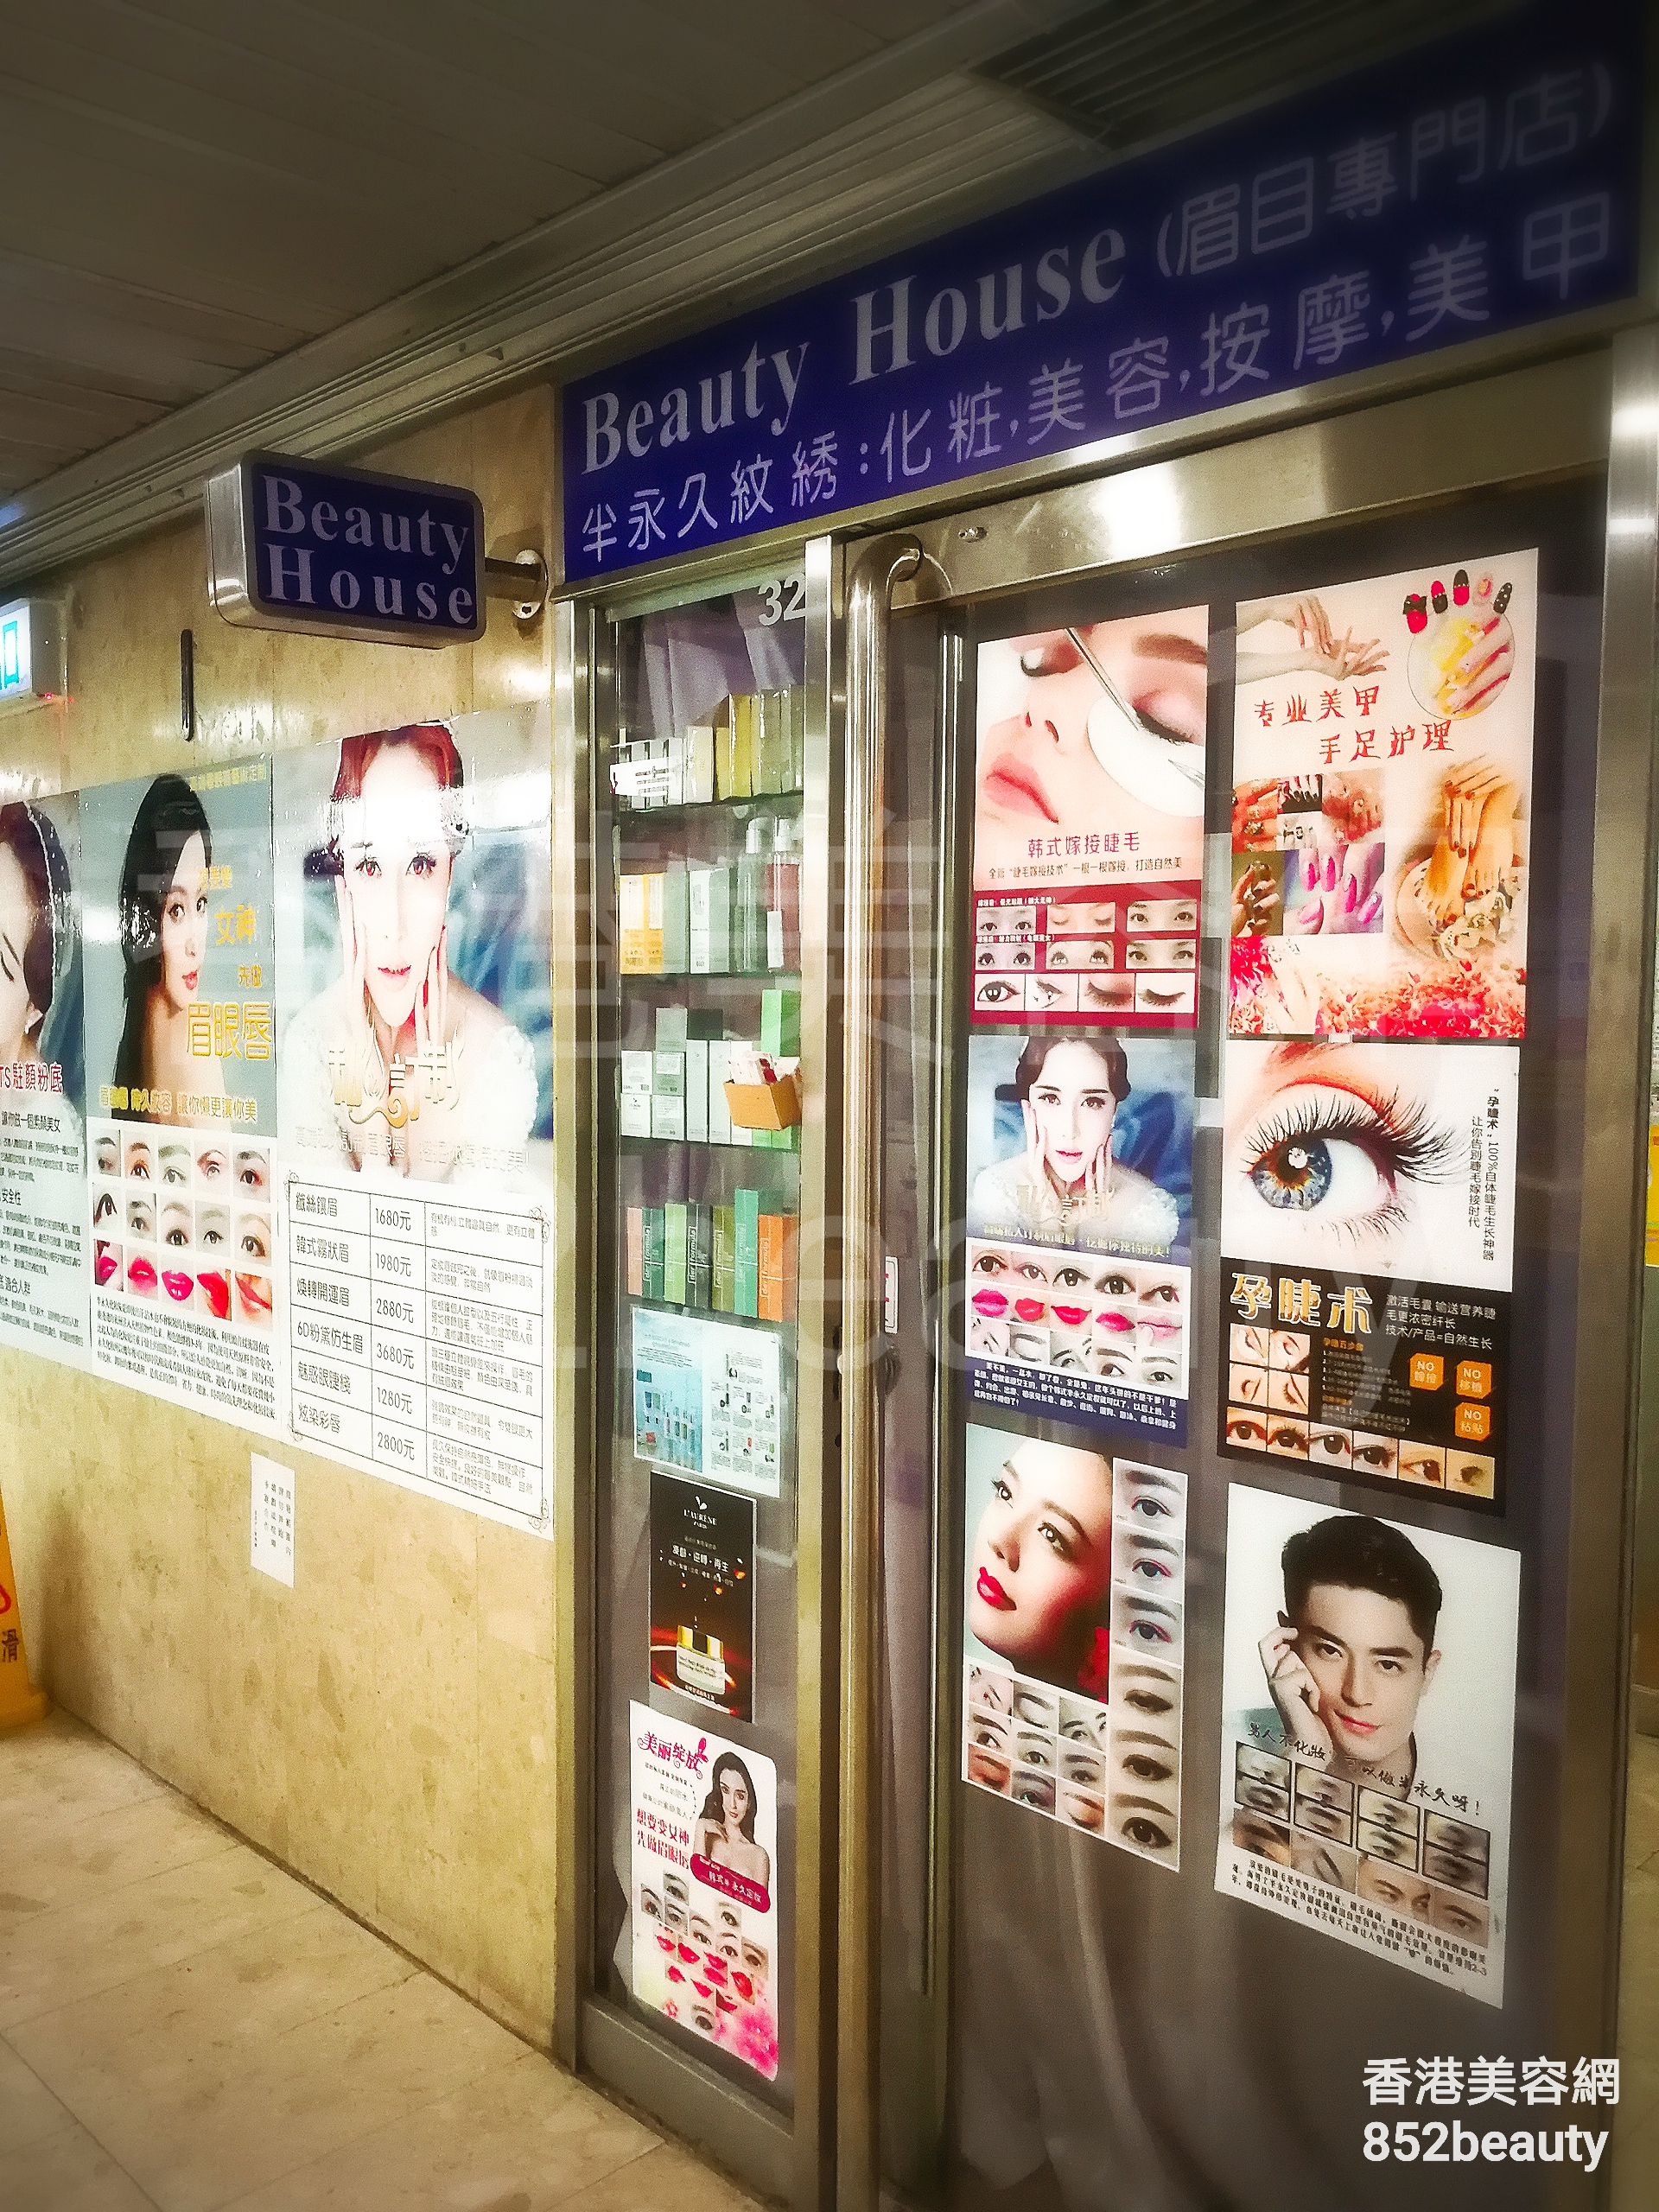 美甲: Beauty house (眉目專門店)